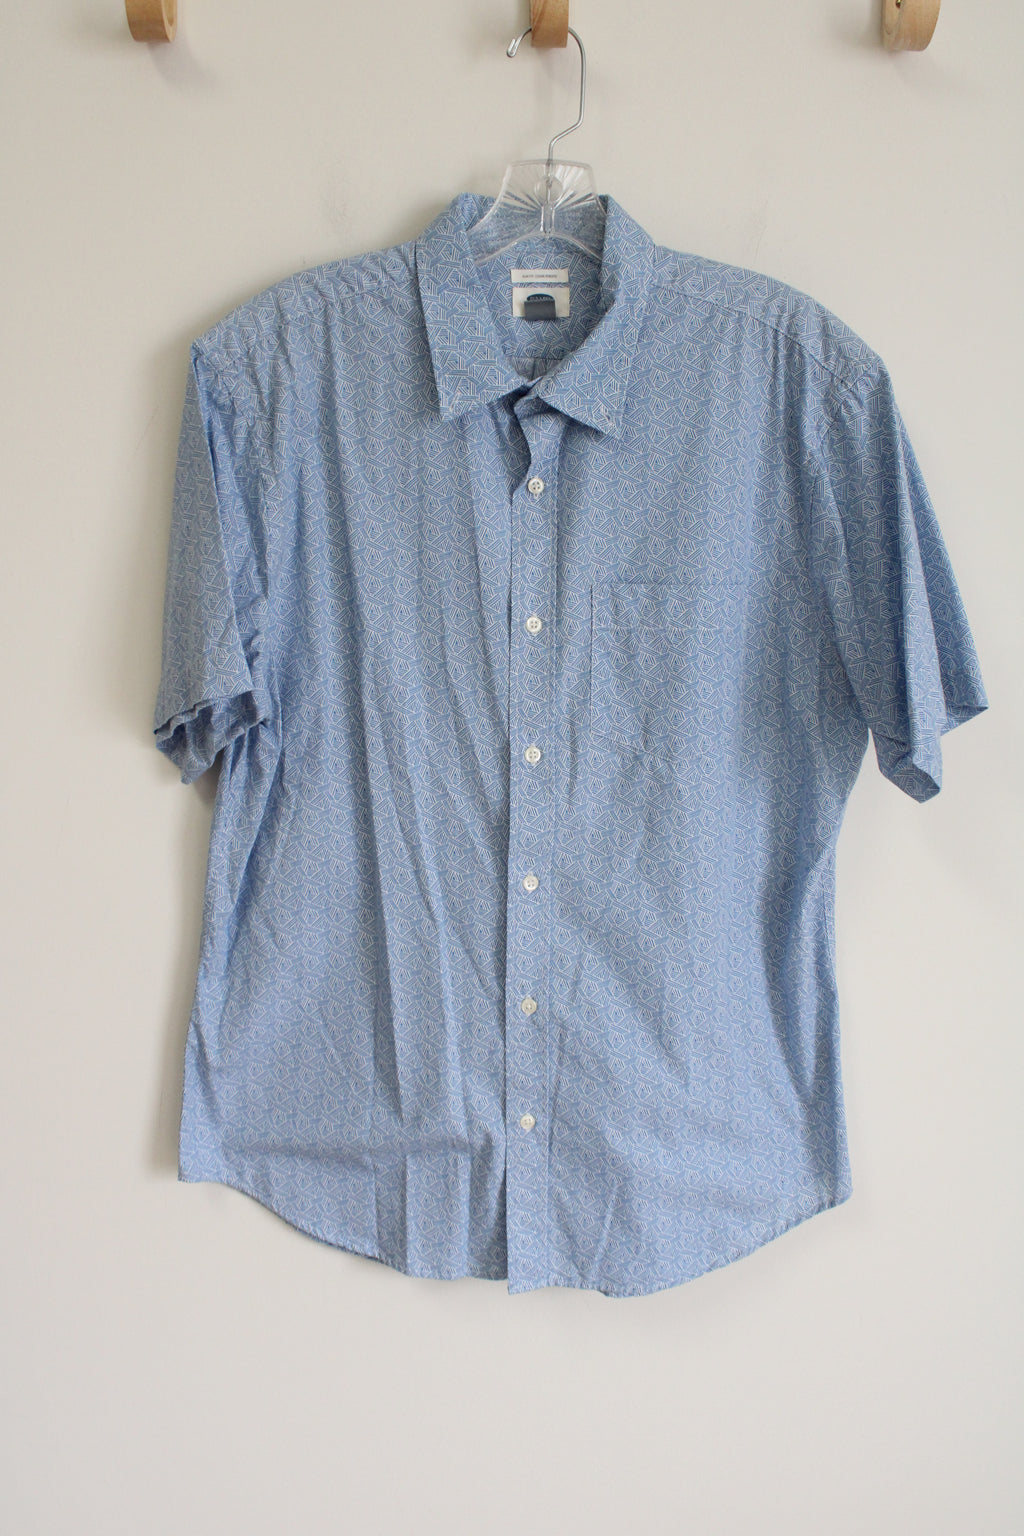 Old Navy Slim Fit Blue Patterned Shirt | L